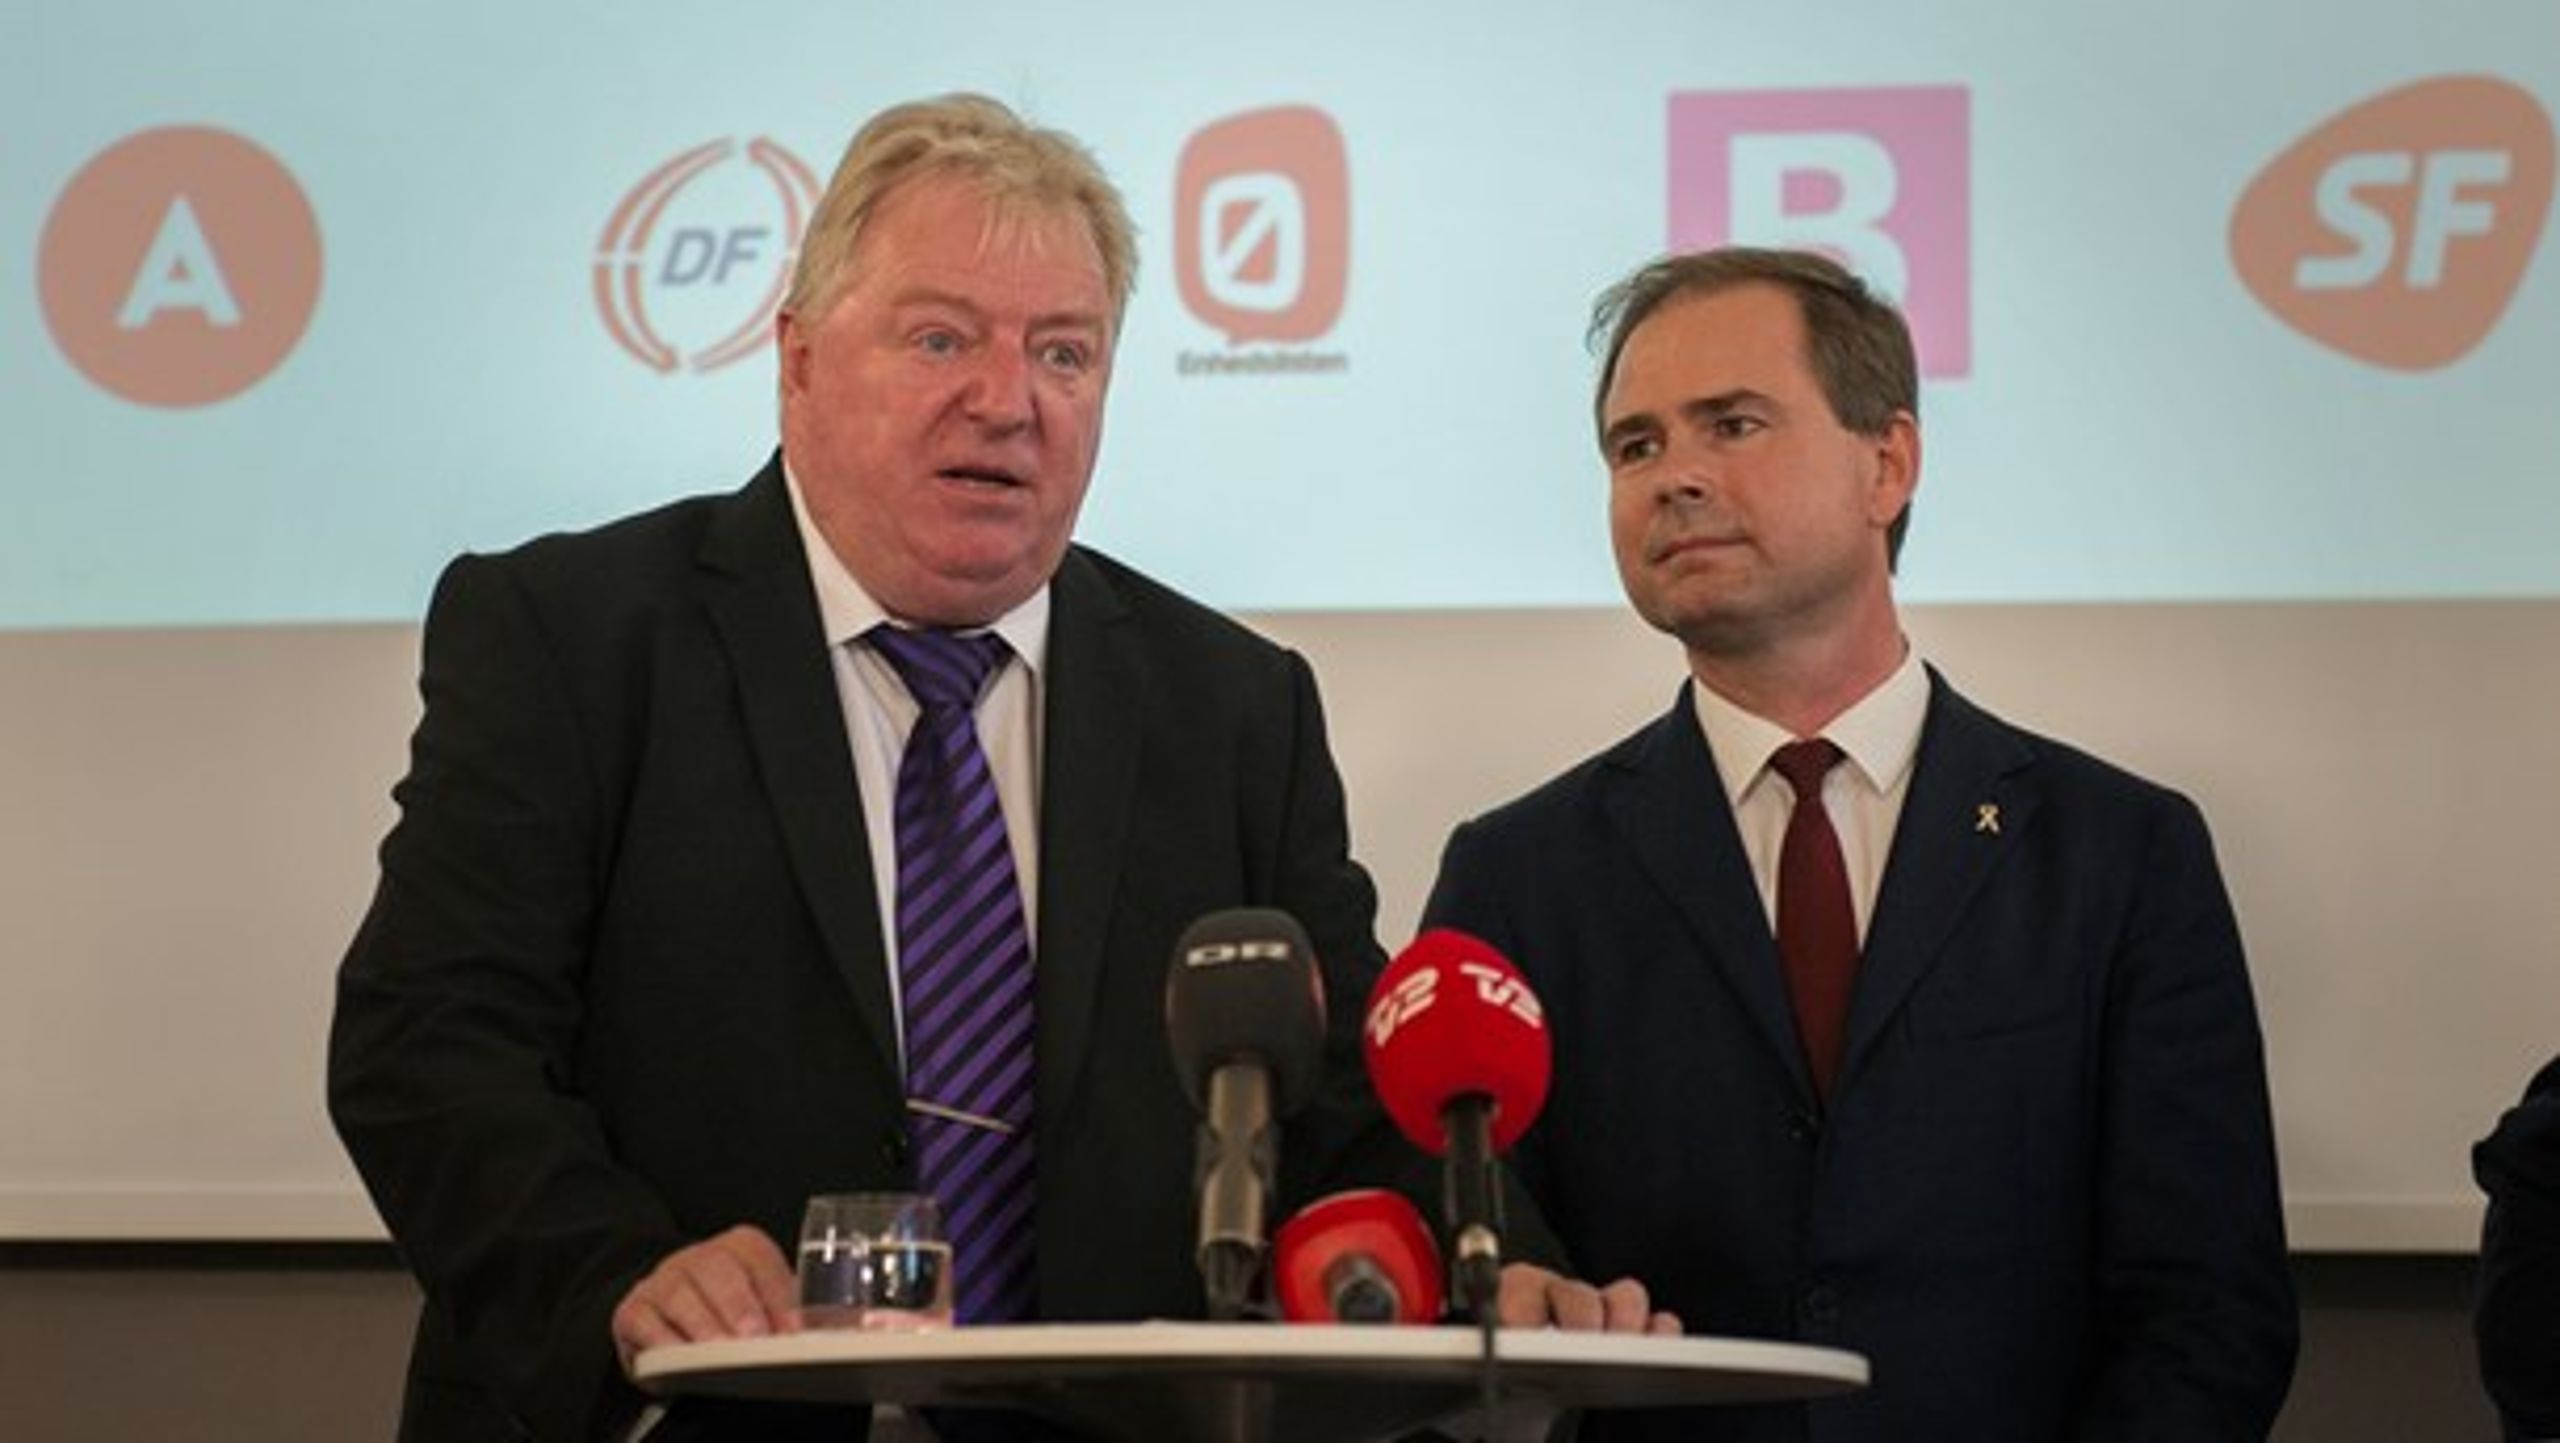 Regeringens støtteparti Dansk Folkeparti&nbsp;præsenterer i dag sammen med oppositionen&nbsp;en udvidelse af Togfonden.&nbsp;